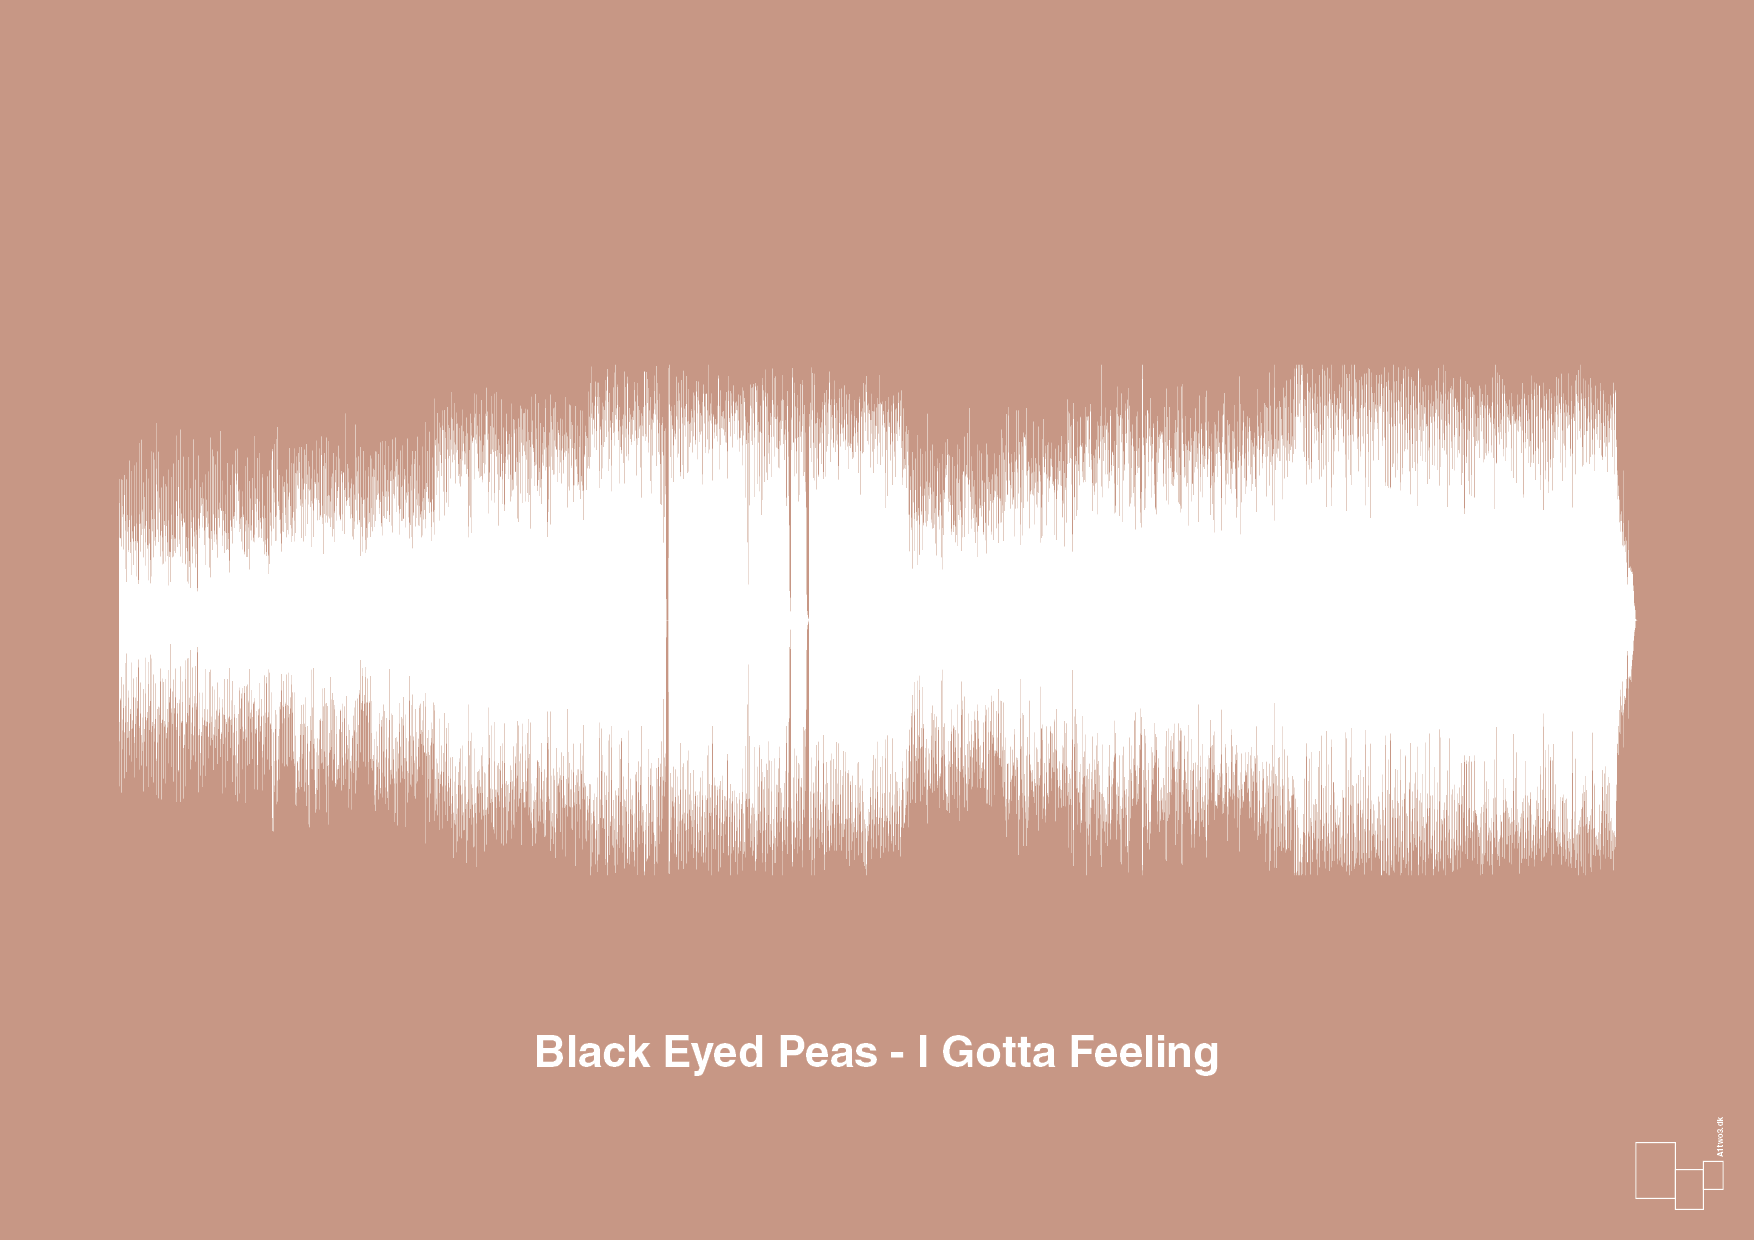 black eyed peas - i gotta feeling - Plakat med Musik i Powder